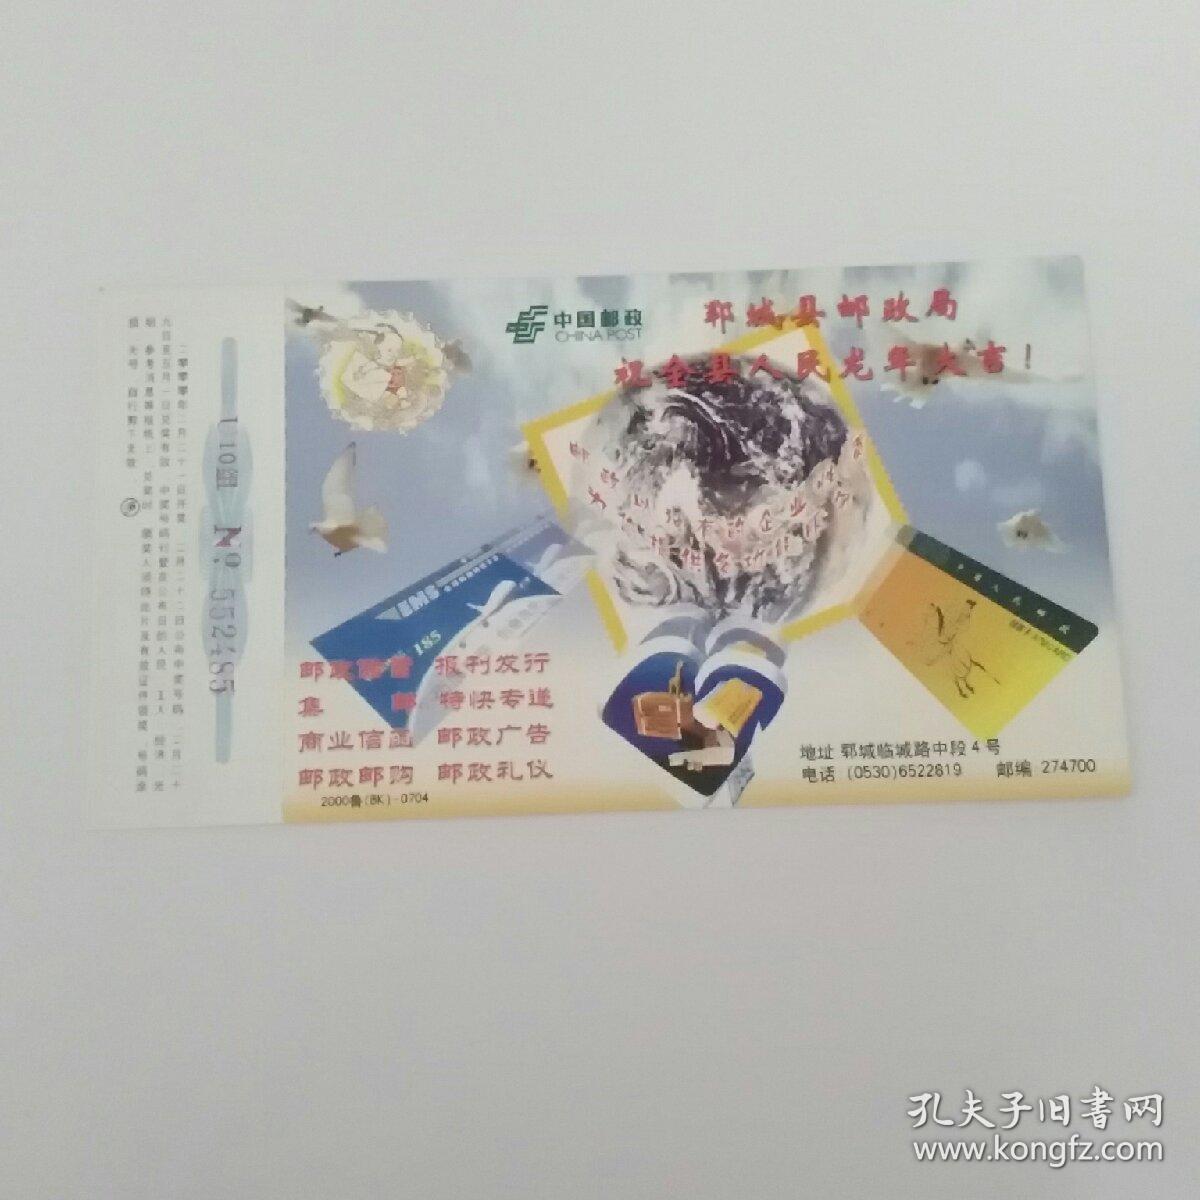 郓城县邮政局祝全县人民龙年大吉(中国邮政贺年有奖明信片)(邮票60分)